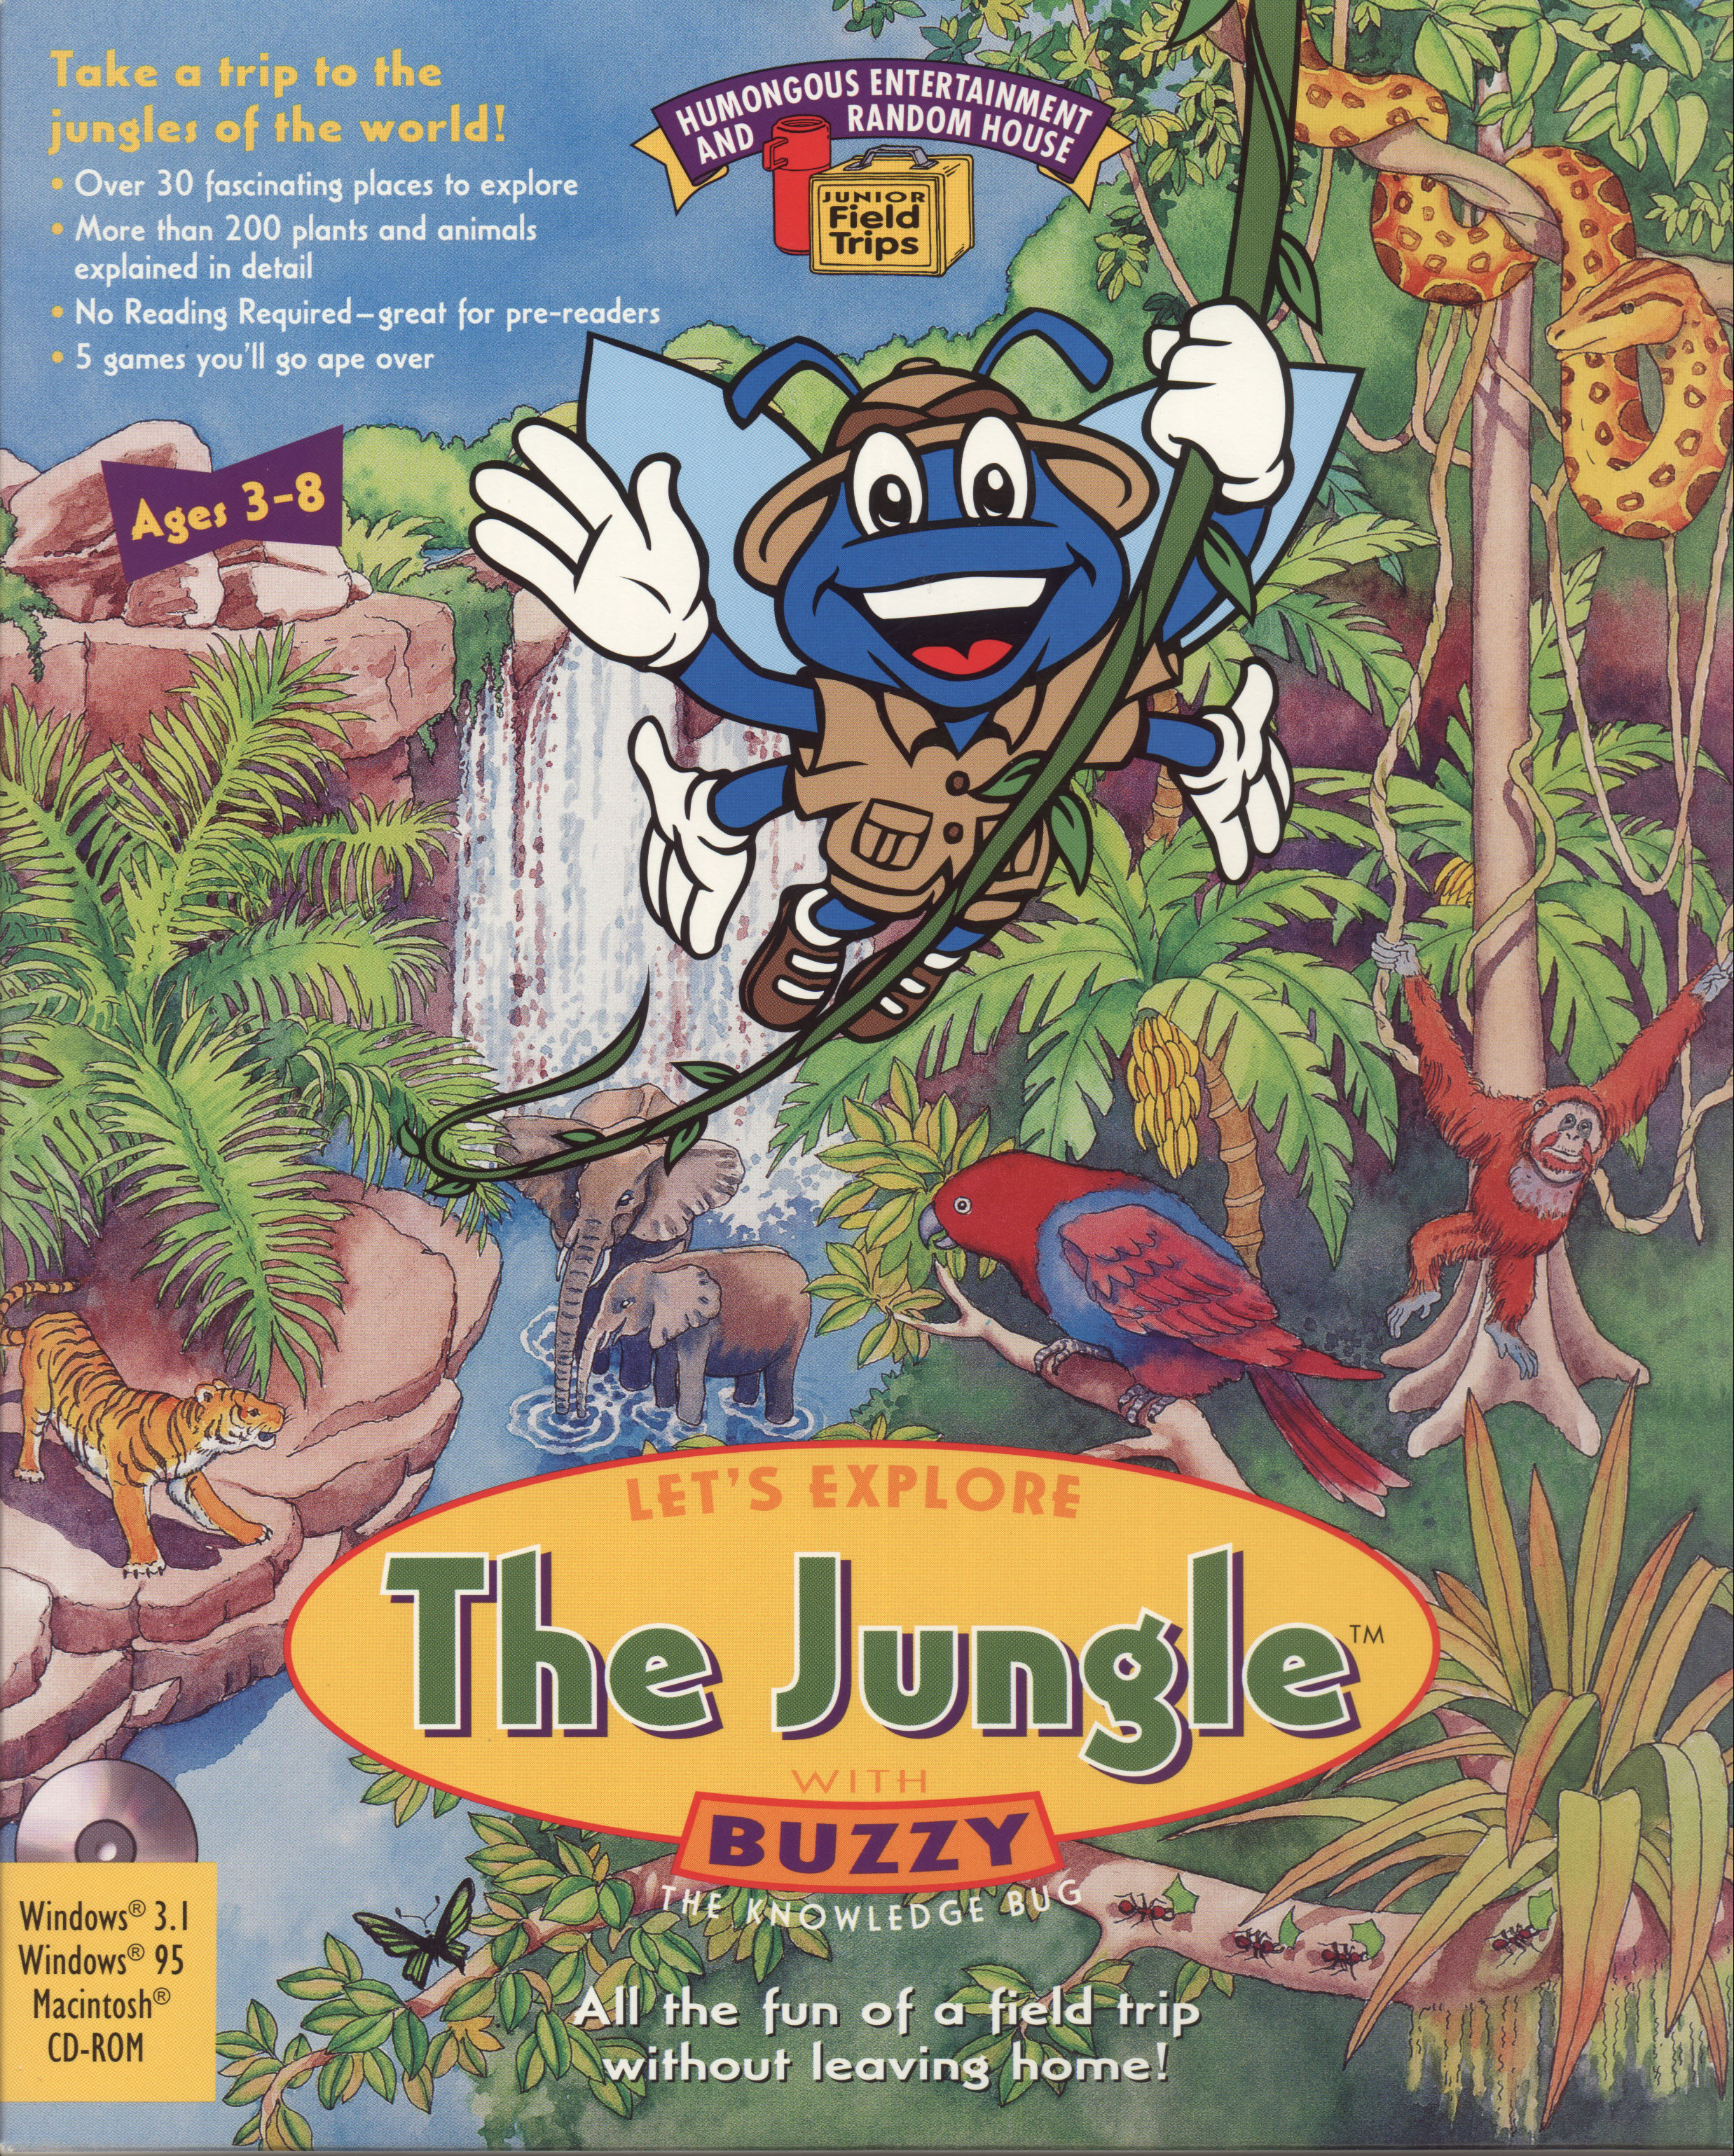 Lets explore. Lets explore the Jungle with Buzzy. Humongous Entertainment игры. Журнал детский про джунгли. Let's explore Buzzy.